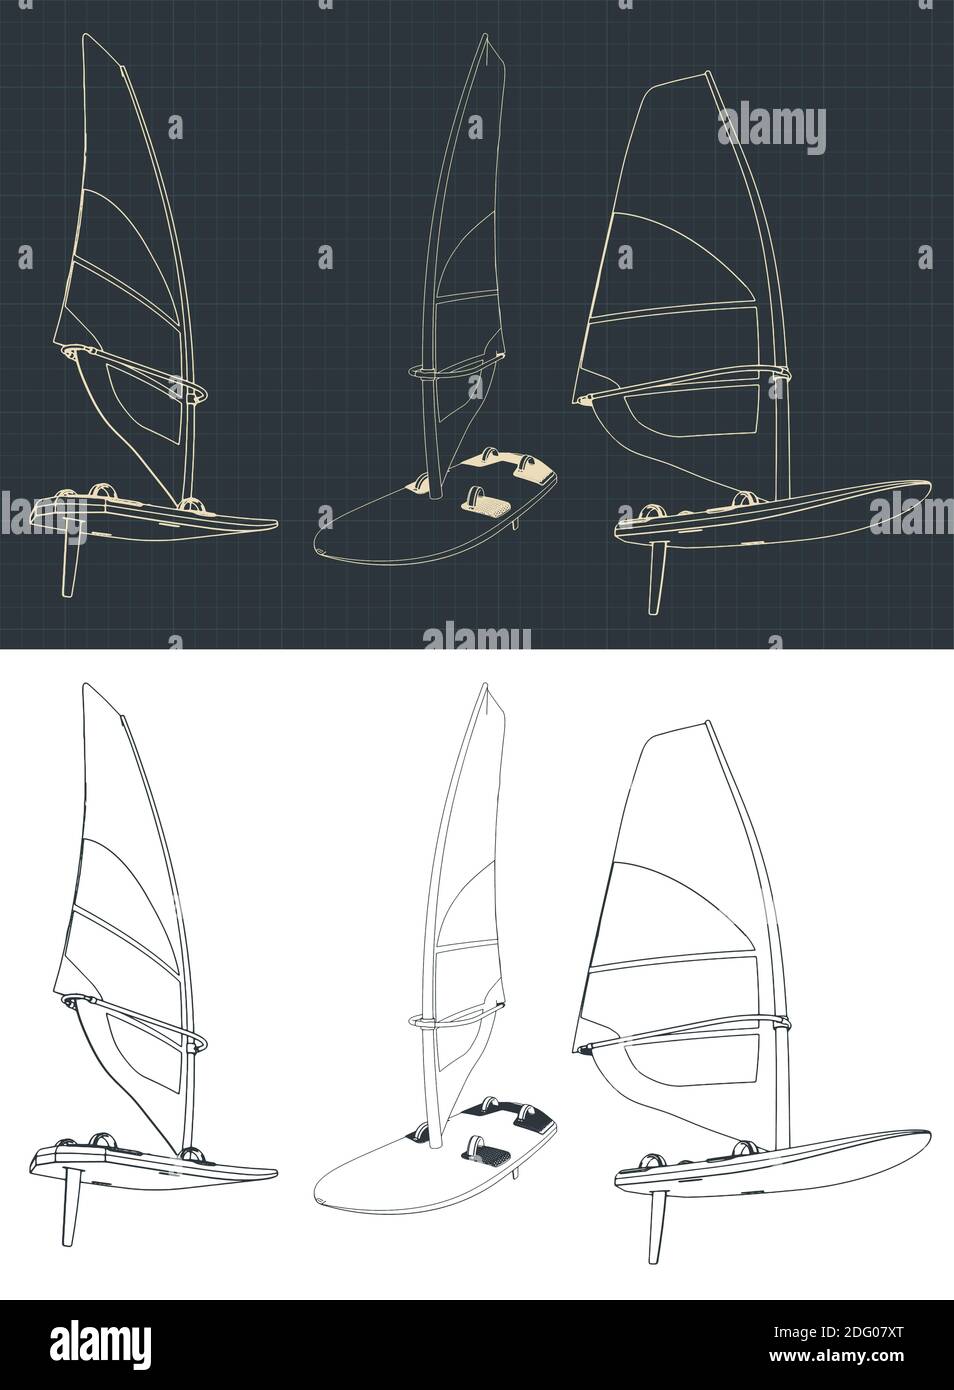 Illustrazione vettoriale stilizzata sul tema del windsurf. Disegni di windsurf Illustrazione Vettoriale